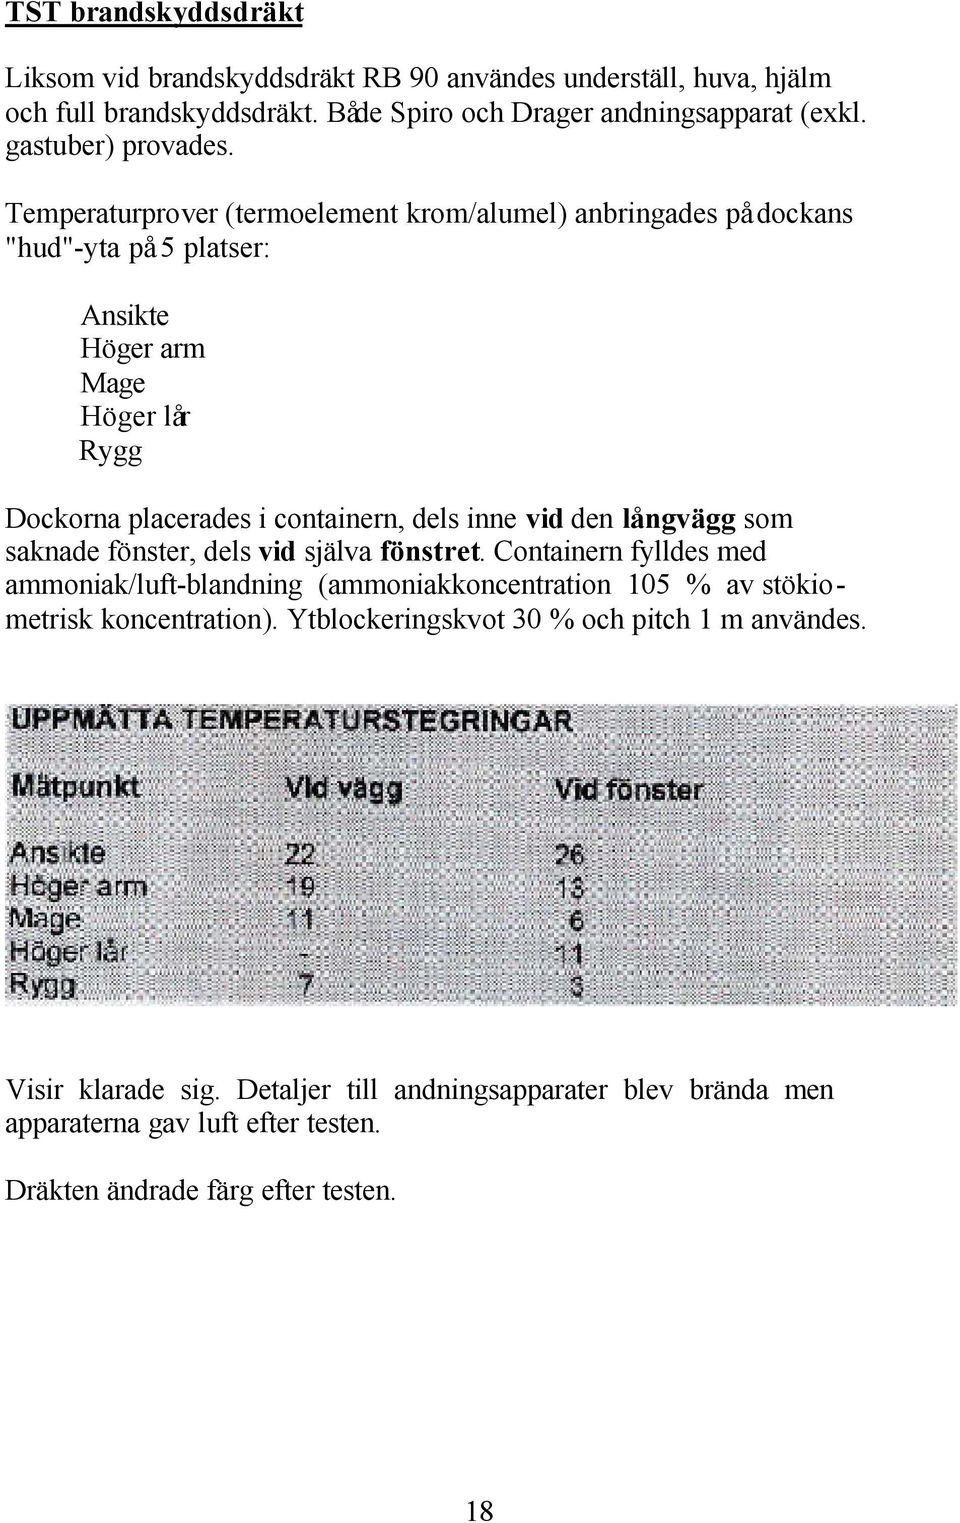 Temperaturprover (termoelement krom/alumel) anbringades på dockans "hud"-yta på 5 platser: Ansikte Höger arm Mage Höger lår Rygg Dockorna placerades i containern, dels inne vid